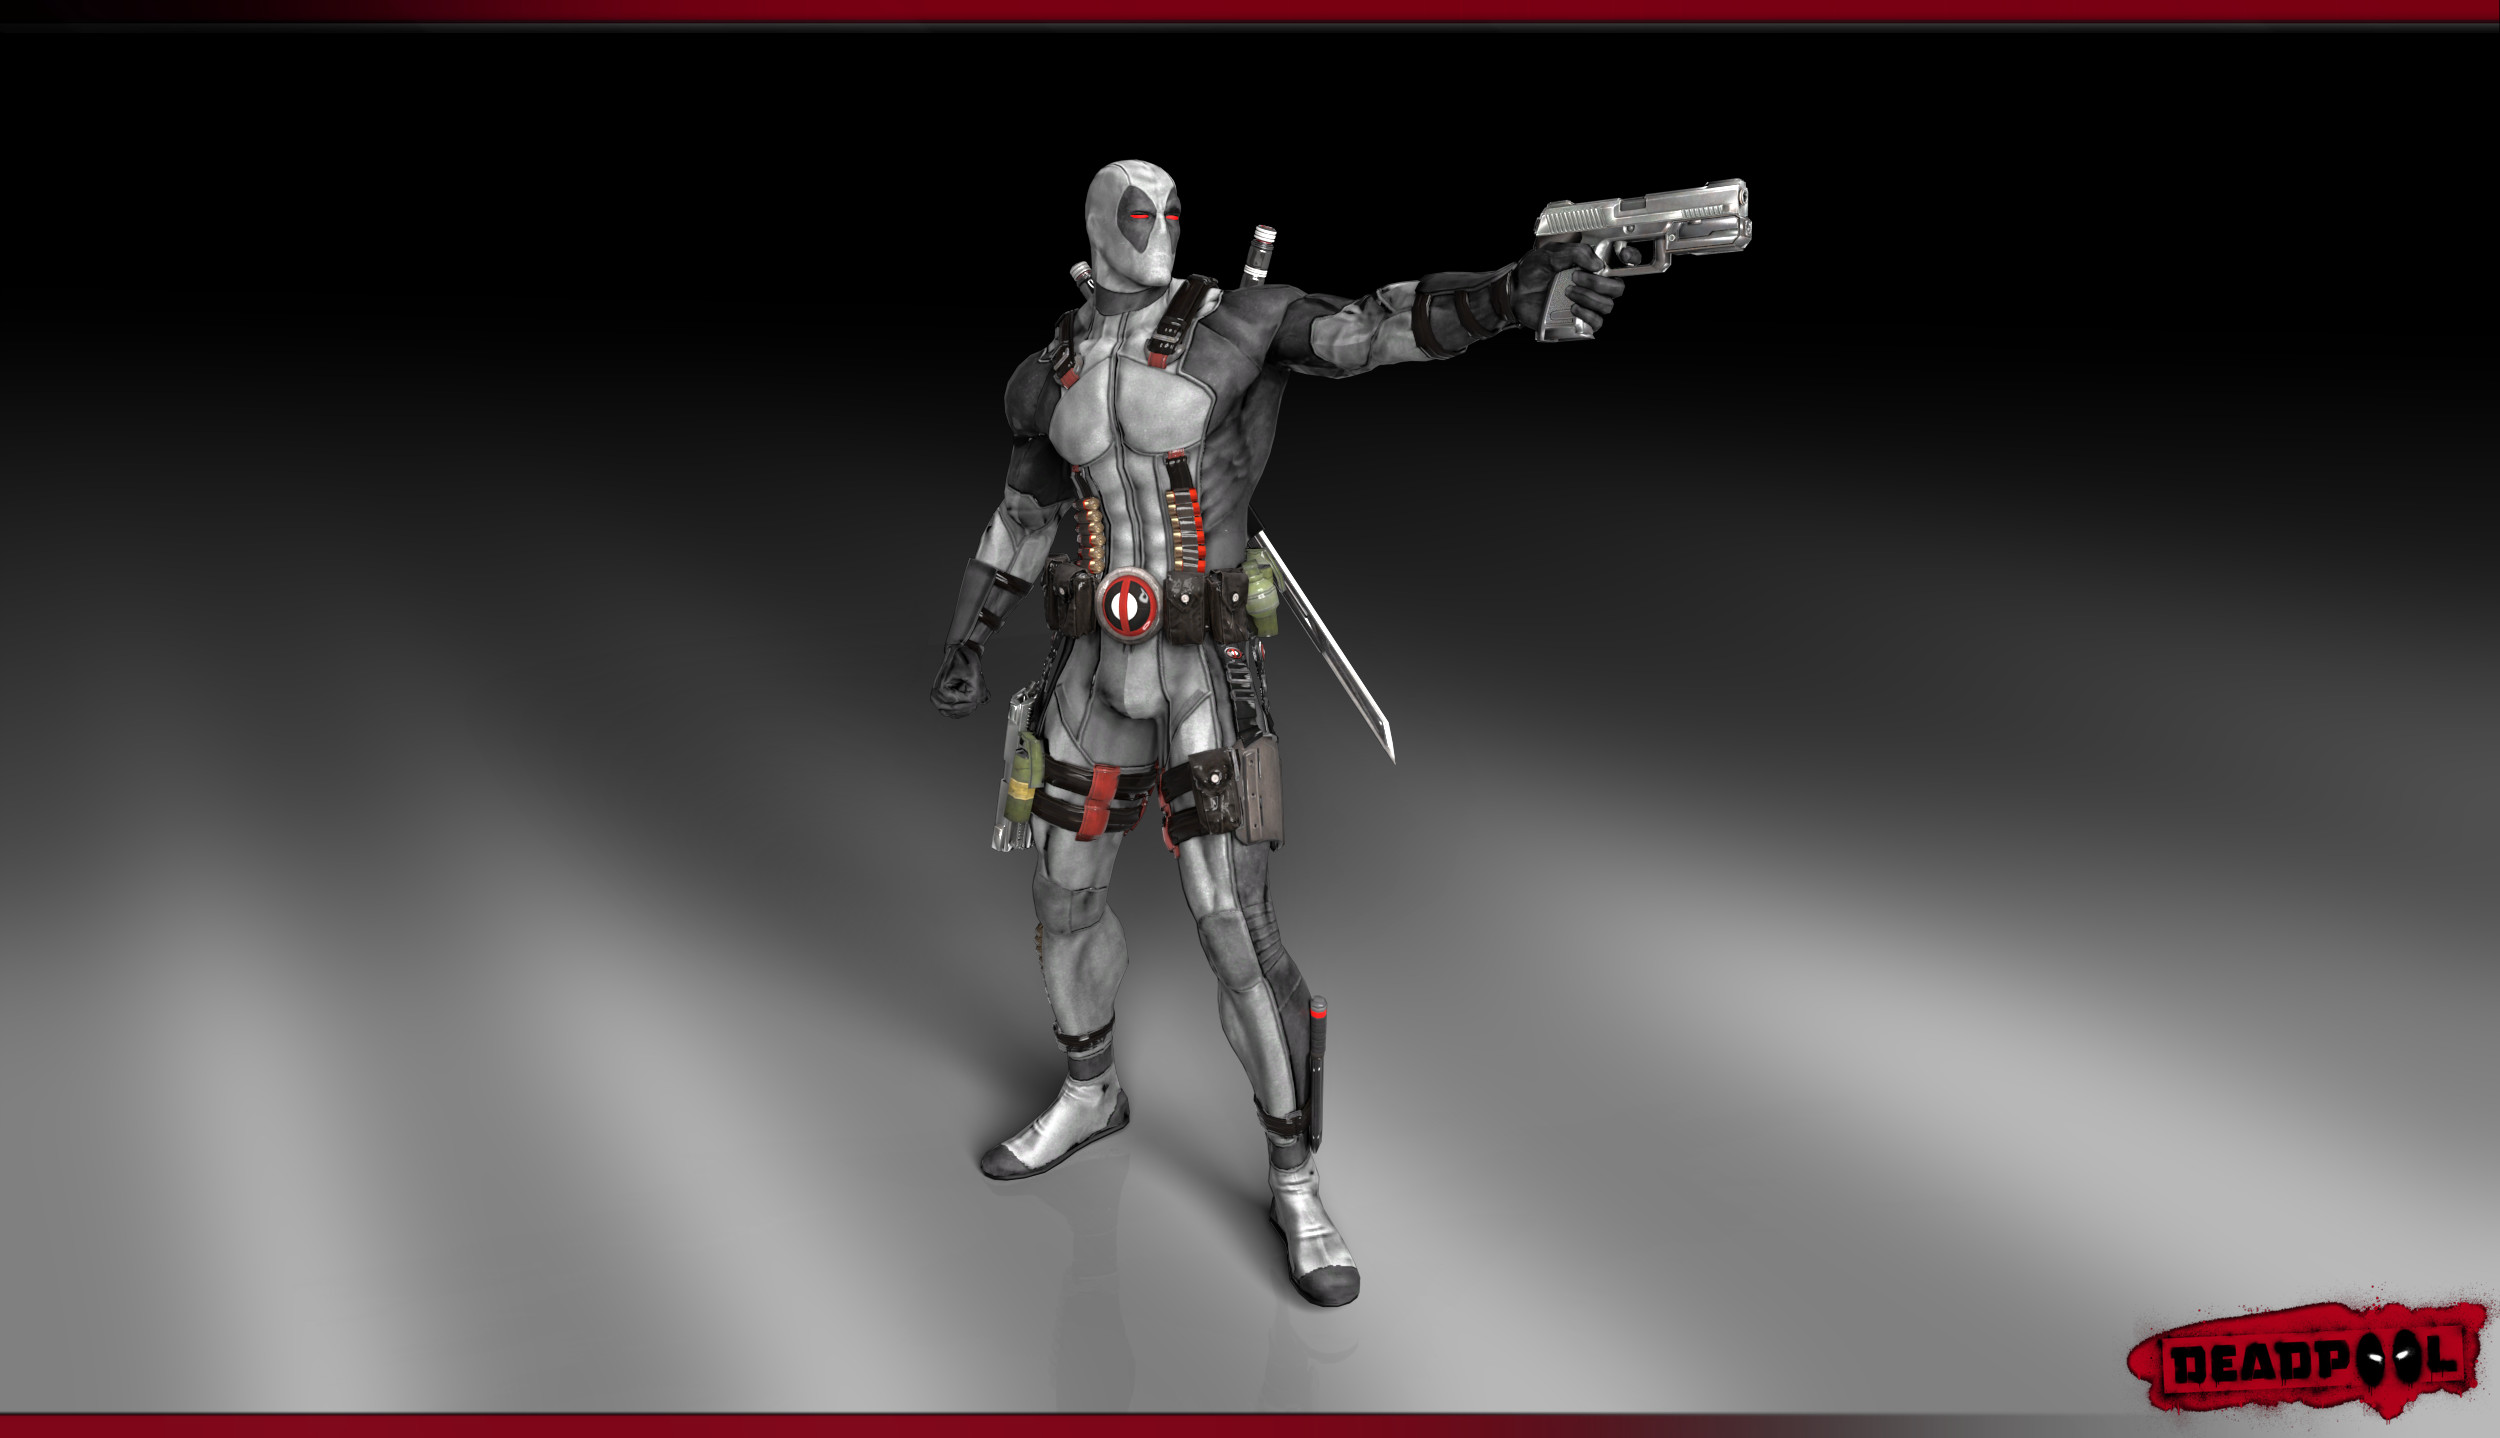 2500x1438 Deadpool render Wallpaper (X-Force Costume) by ArRoW-4-U on